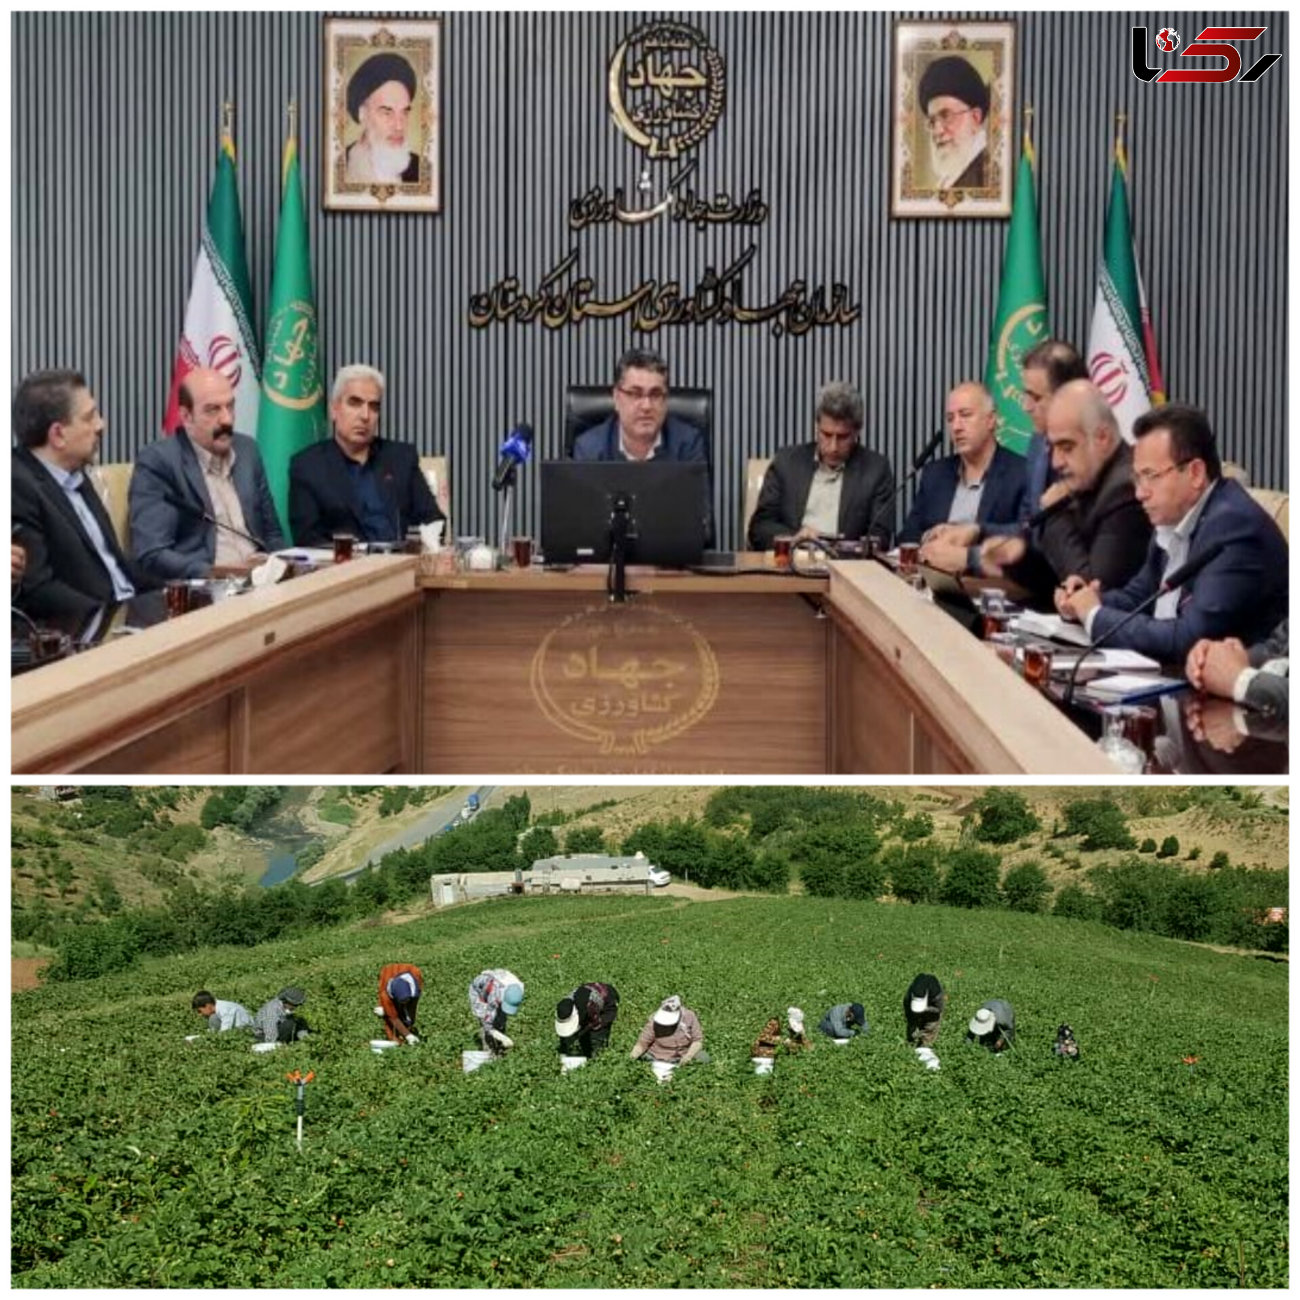   افزایش تولید محصولات کشاورزی کردستان به ۴.۳ میلیون تن/  کردستان جزو استانهای مهم ایران در زمینه تامین امنیت غذایی است
